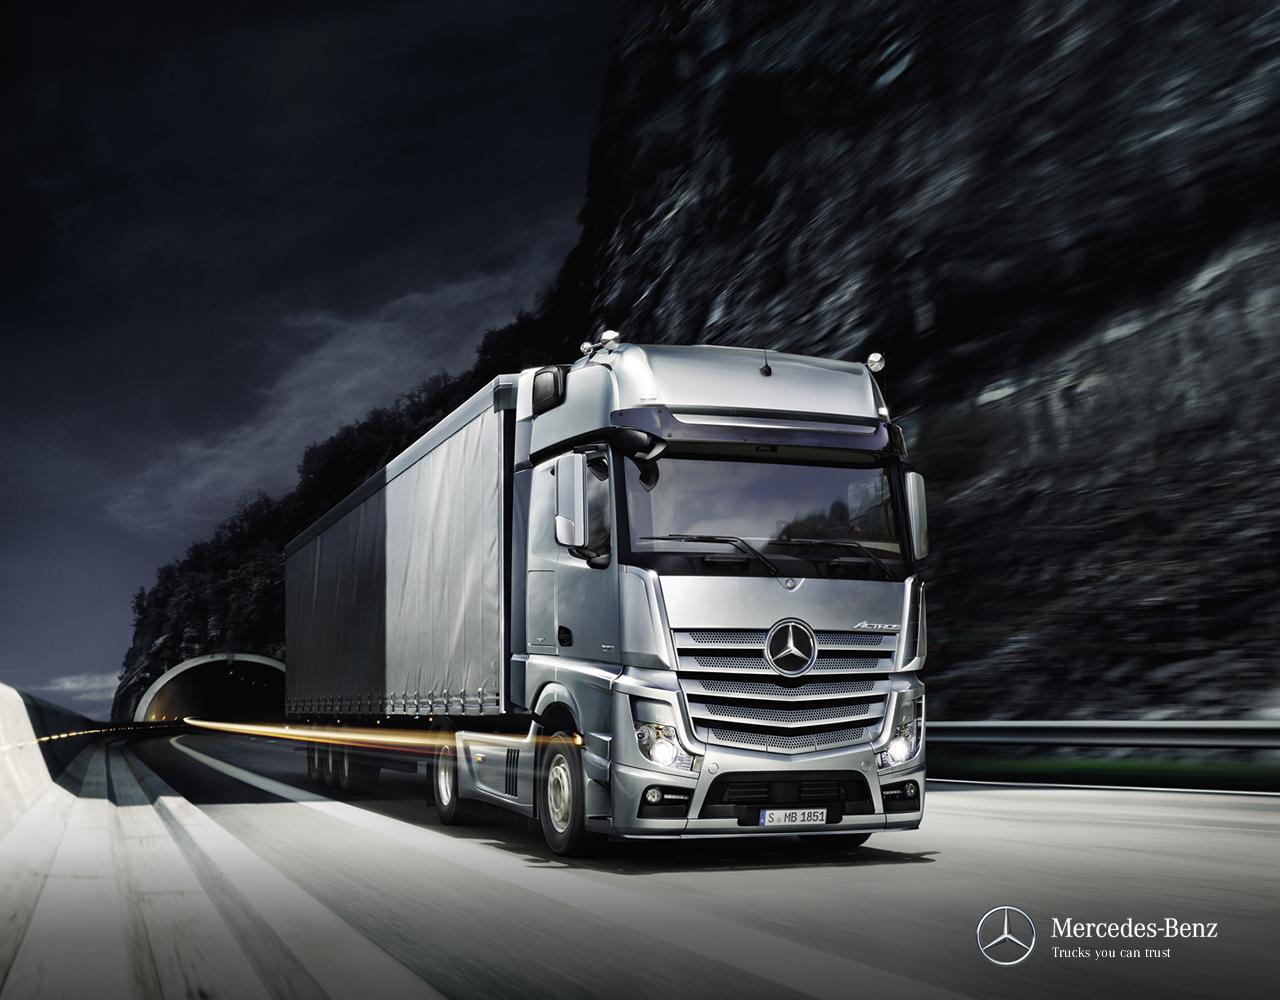 Accessoires pour camions Mercedes-Benz - tout pour votre camion